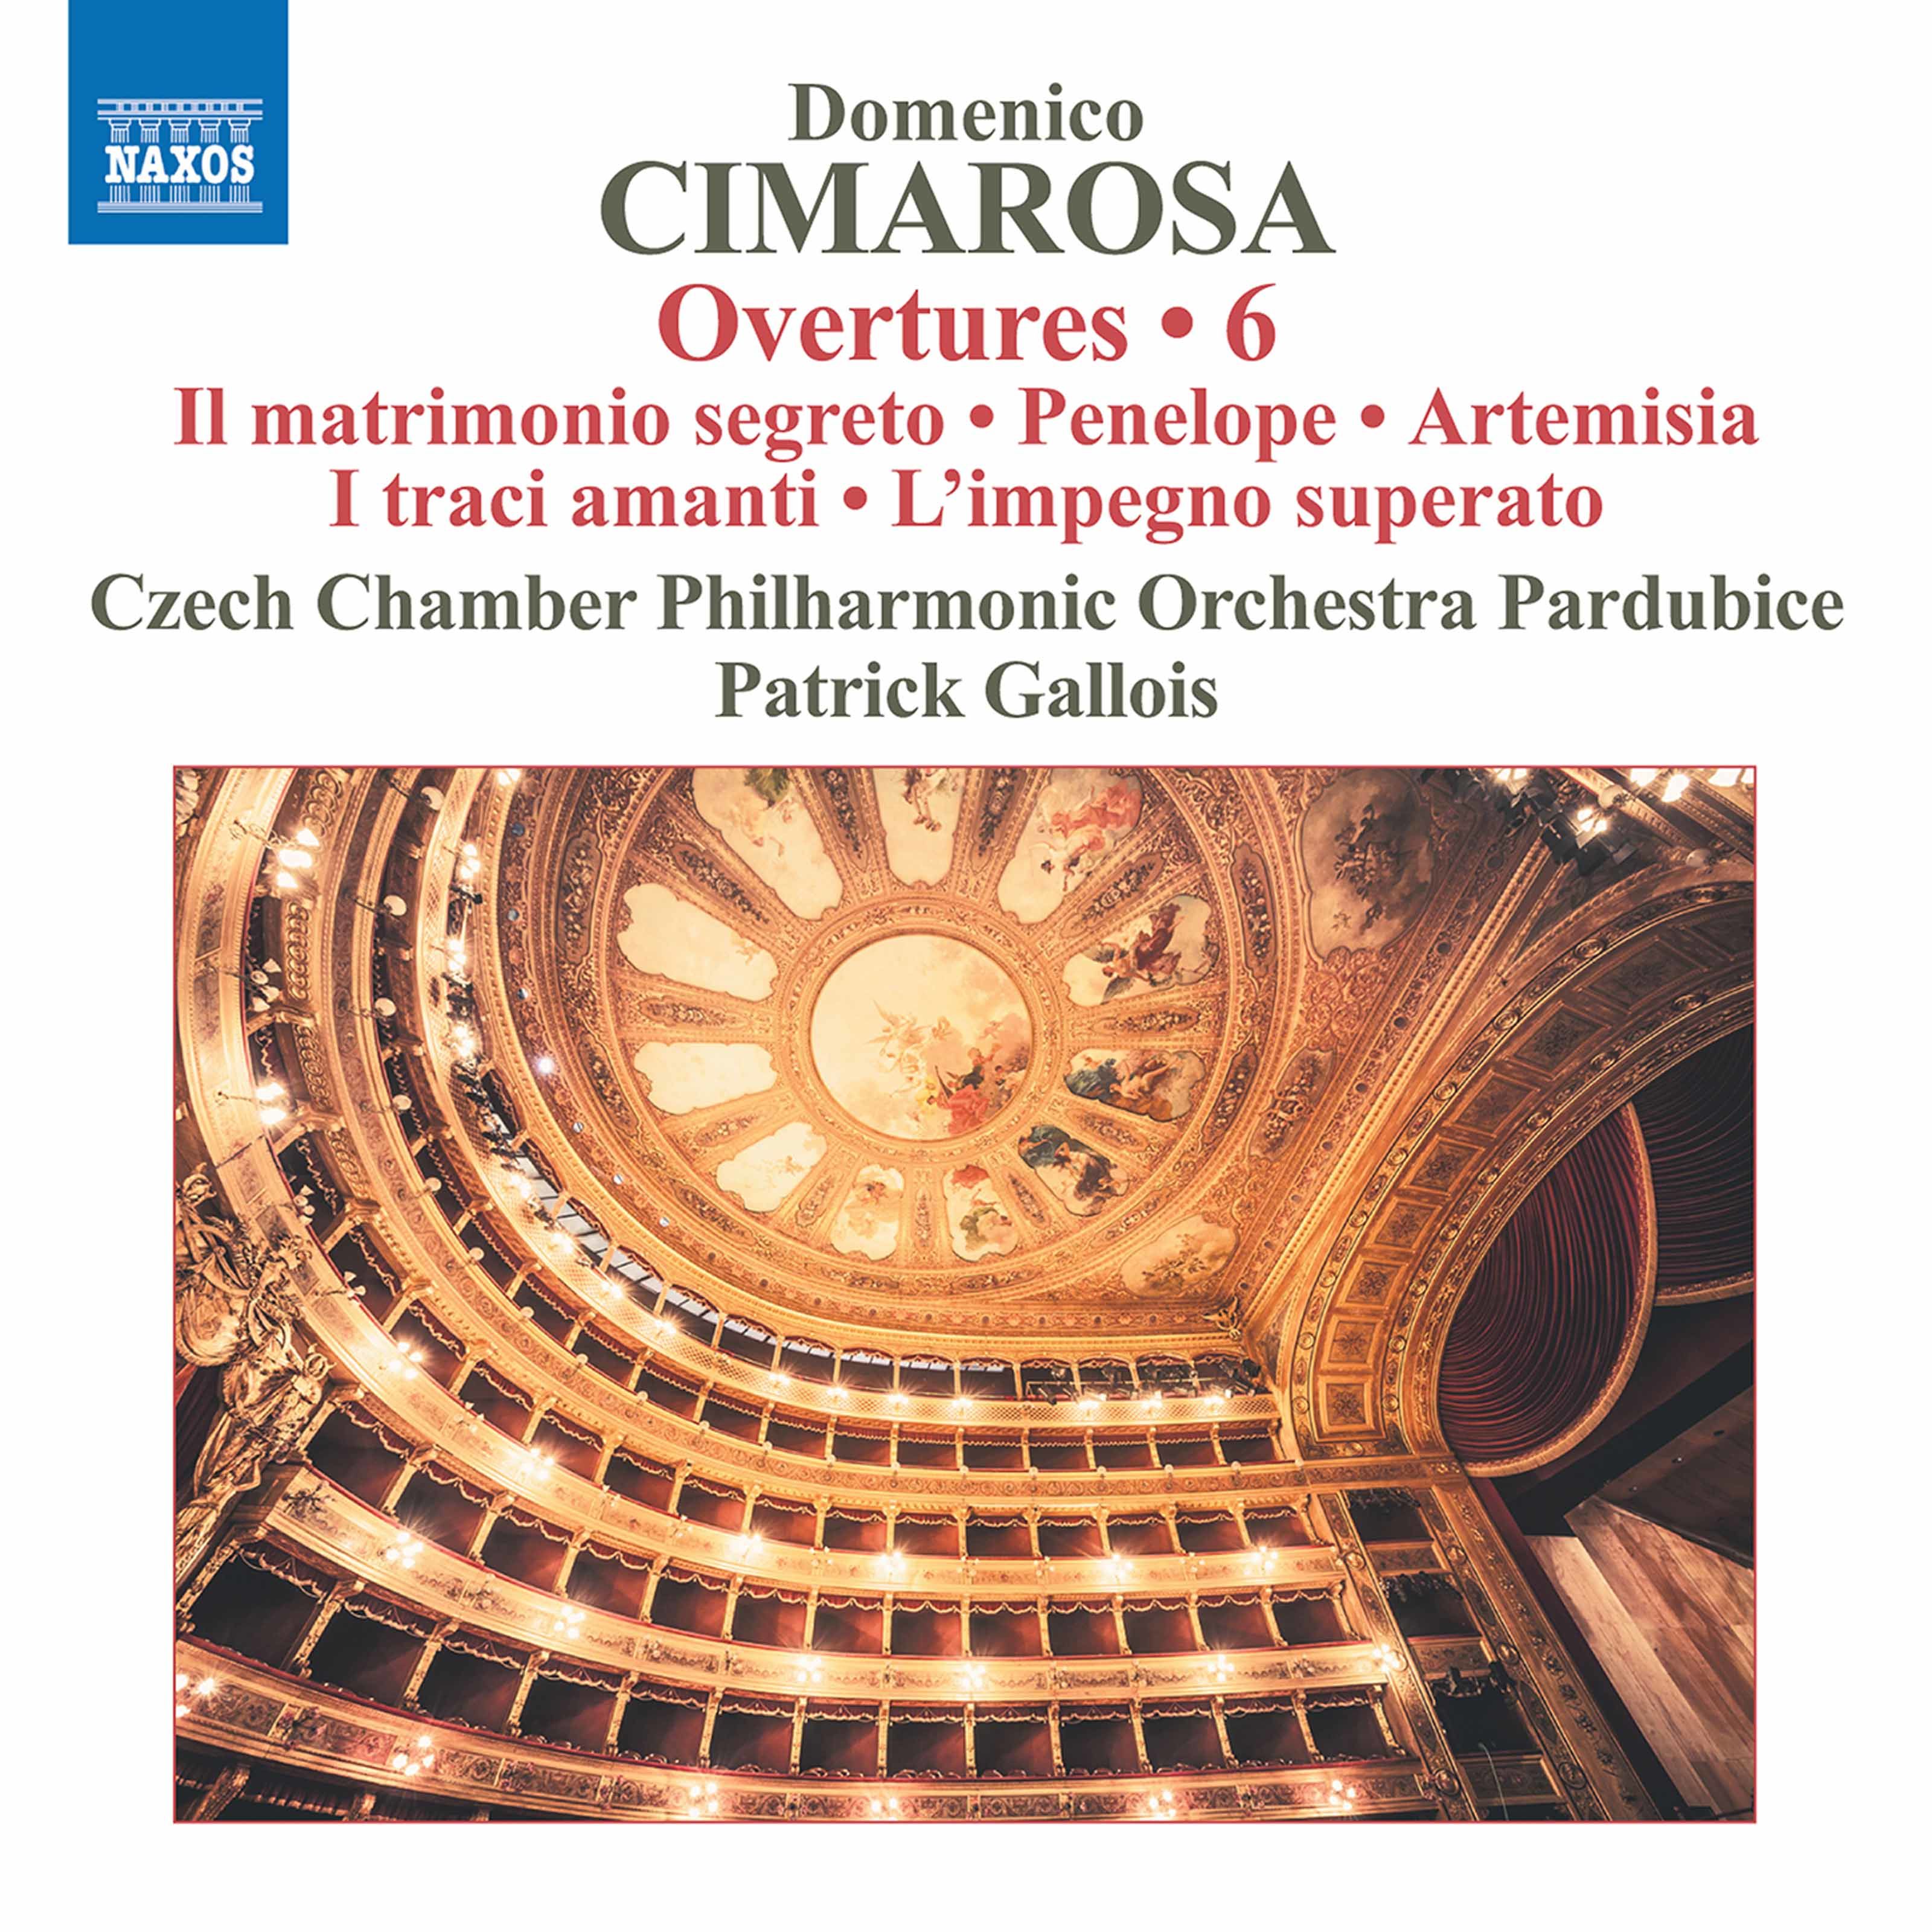 Czech Chamber Philharmonic Orchestra Pardubice, Patrick Gallois - Cimarosa: Overtures, Vol. 6 (2020) [FLAC 24bit/96kHz]